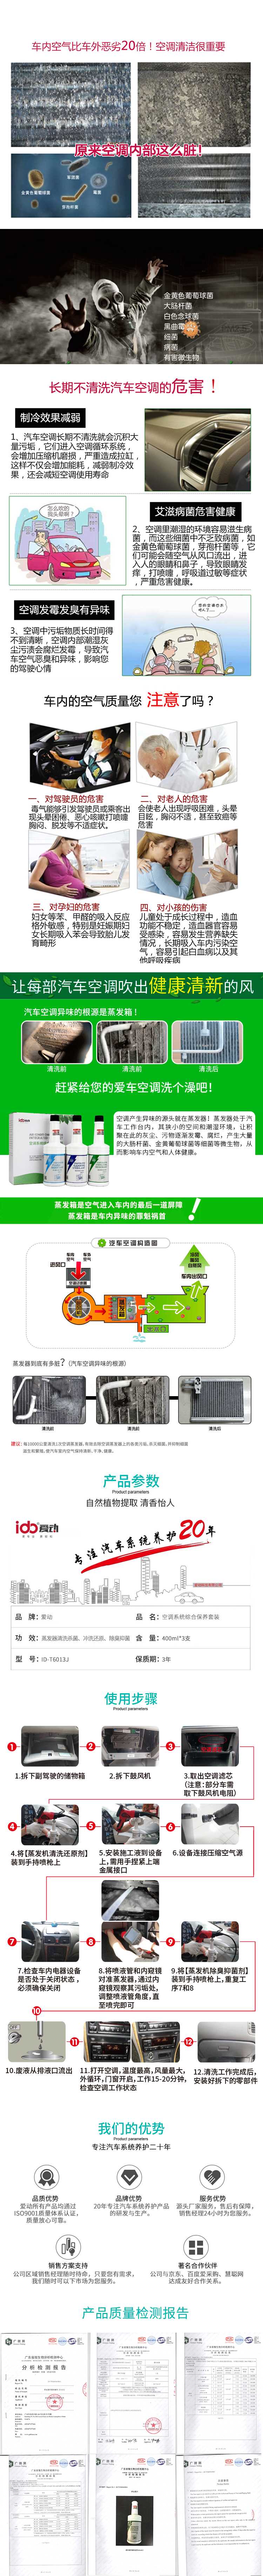 8空調系統維護保養-空調套裝-空調套裝詳情